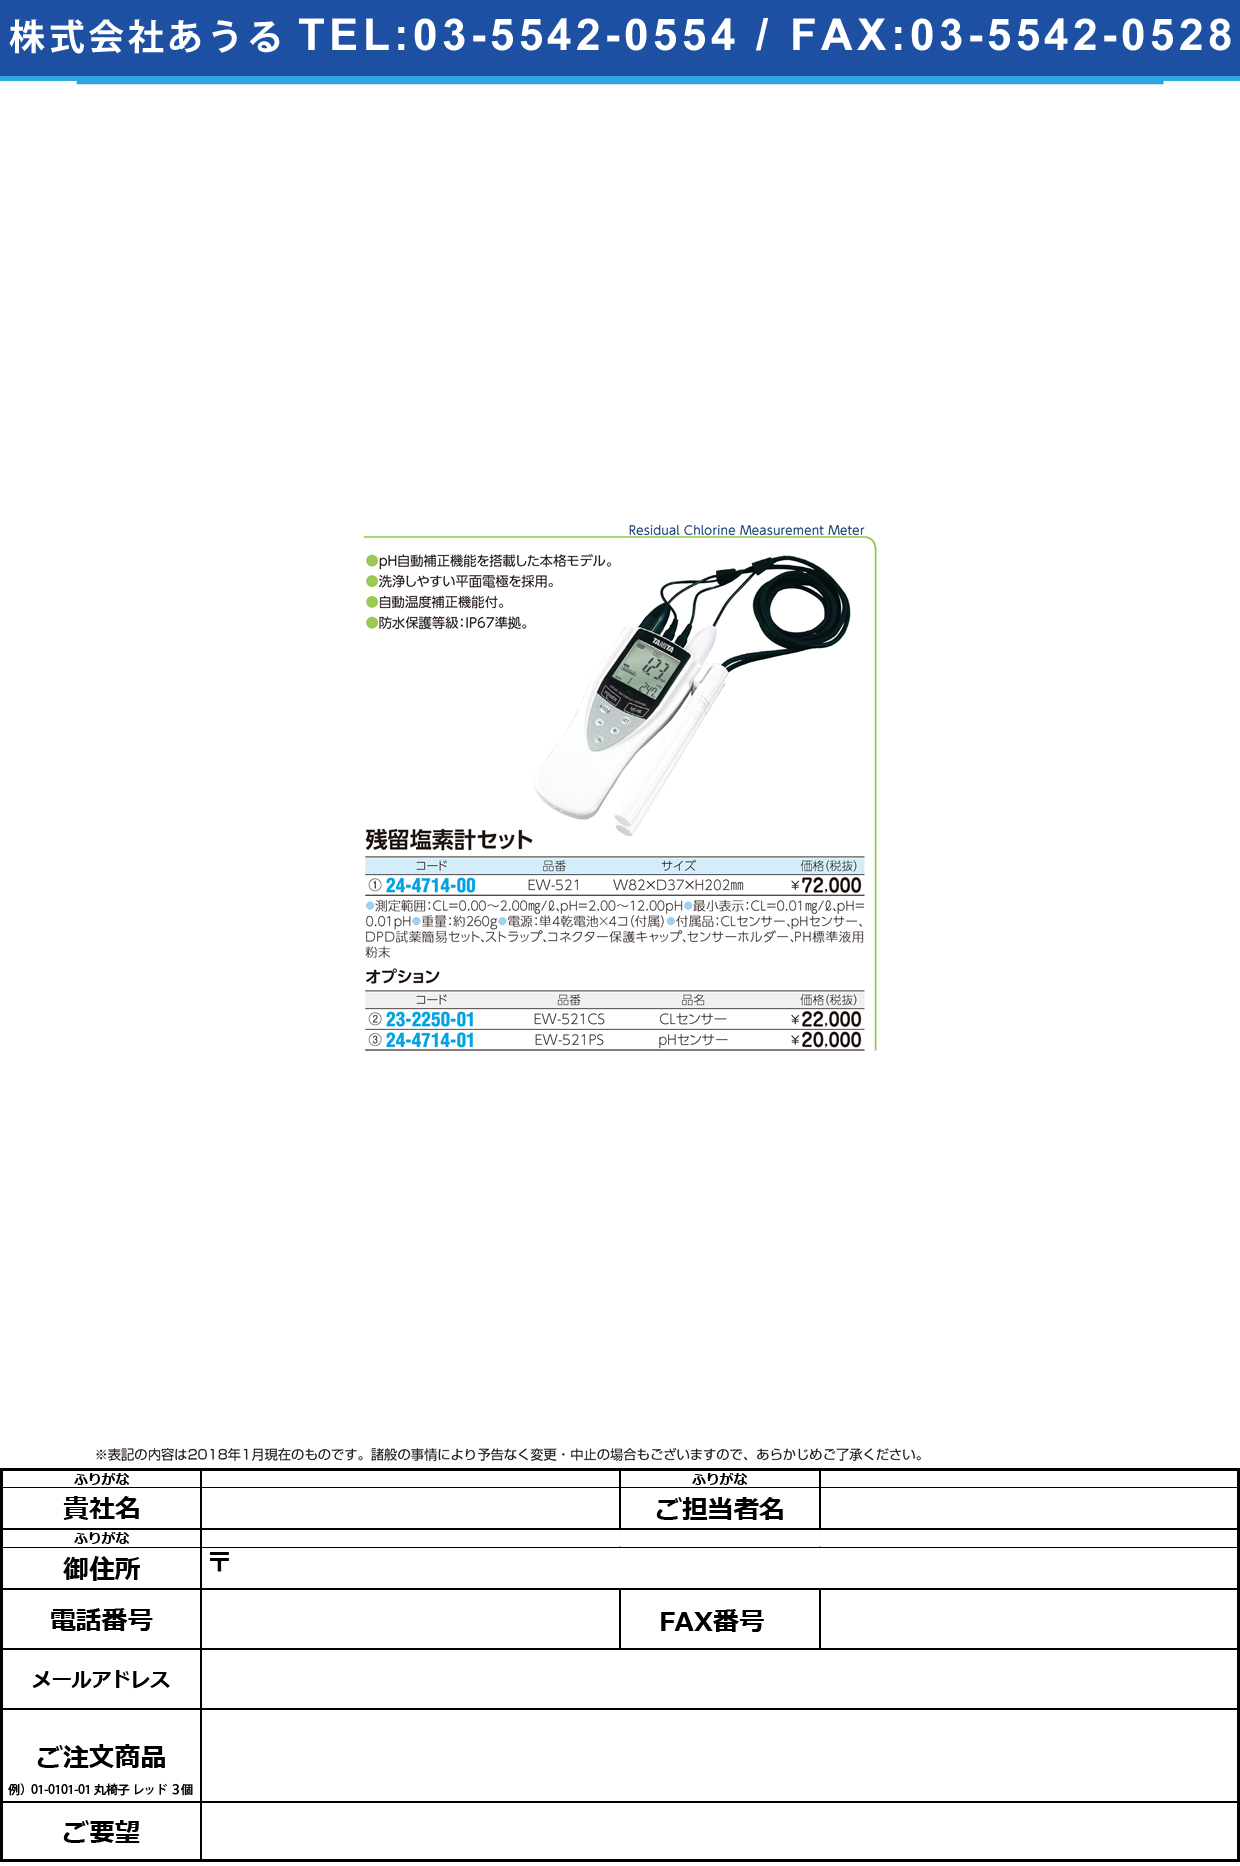 (24-4714-00)残留塩素計 EW-521 ｻﾞﾝﾘｭｳｴﾝｿｹｲ(タニタ)【1台単位】【2018年カタログ商品】